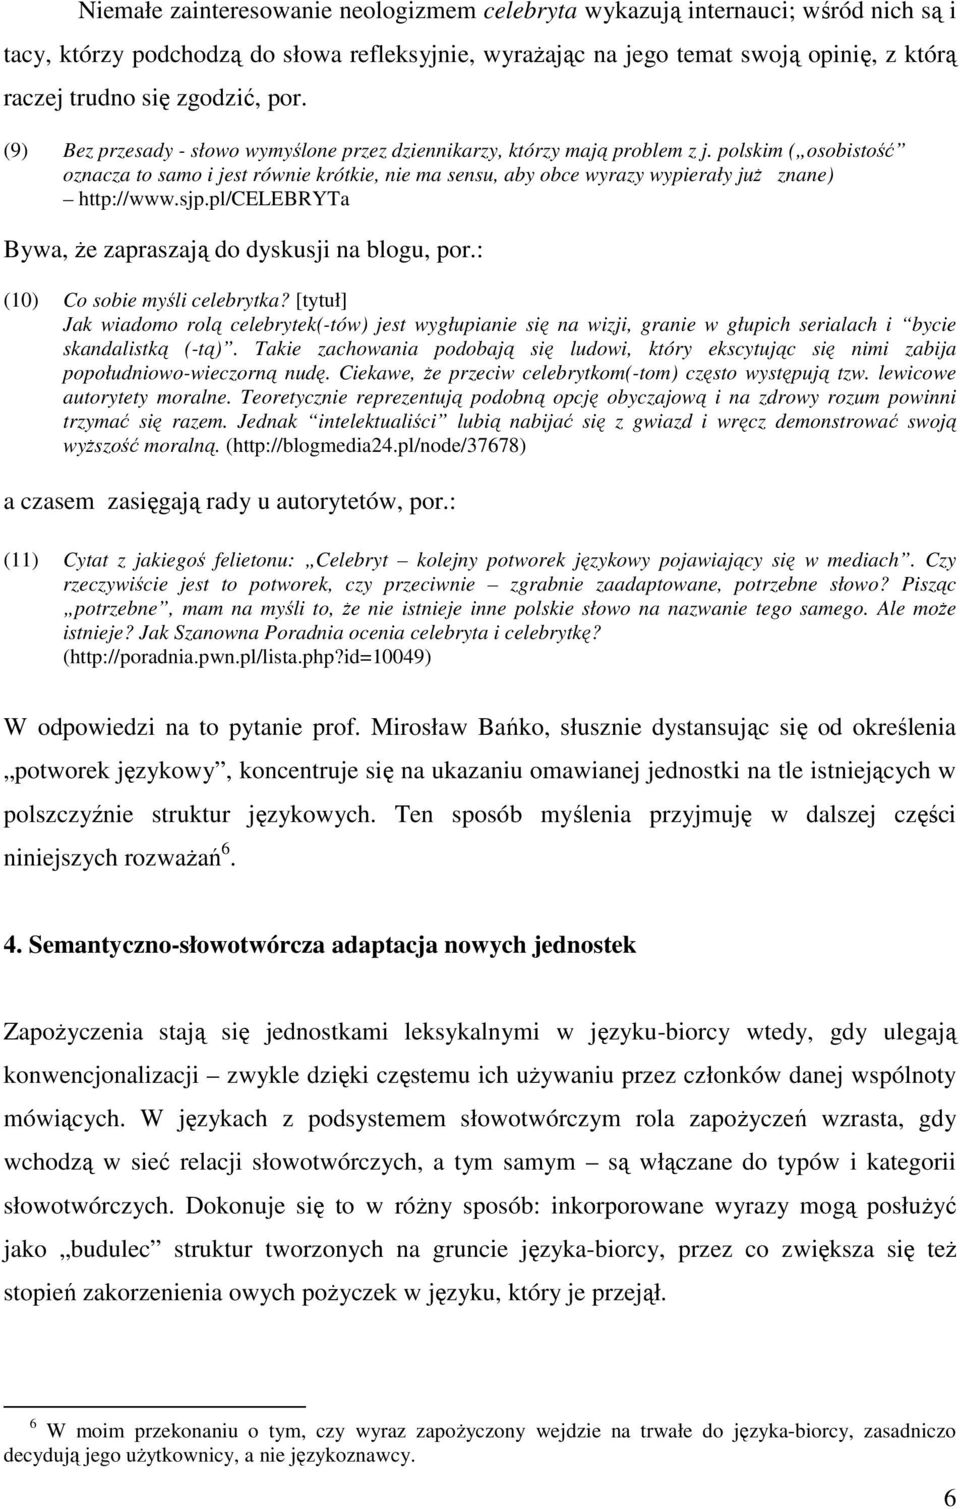 polskim ( osobistość oznacza to samo i jest równie krótkie, nie ma sensu, aby obce wyrazy wypierały już znane) http://www.sjp.pl/celebryta Bywa, że zapraszają do dyskusji na blogu, por.